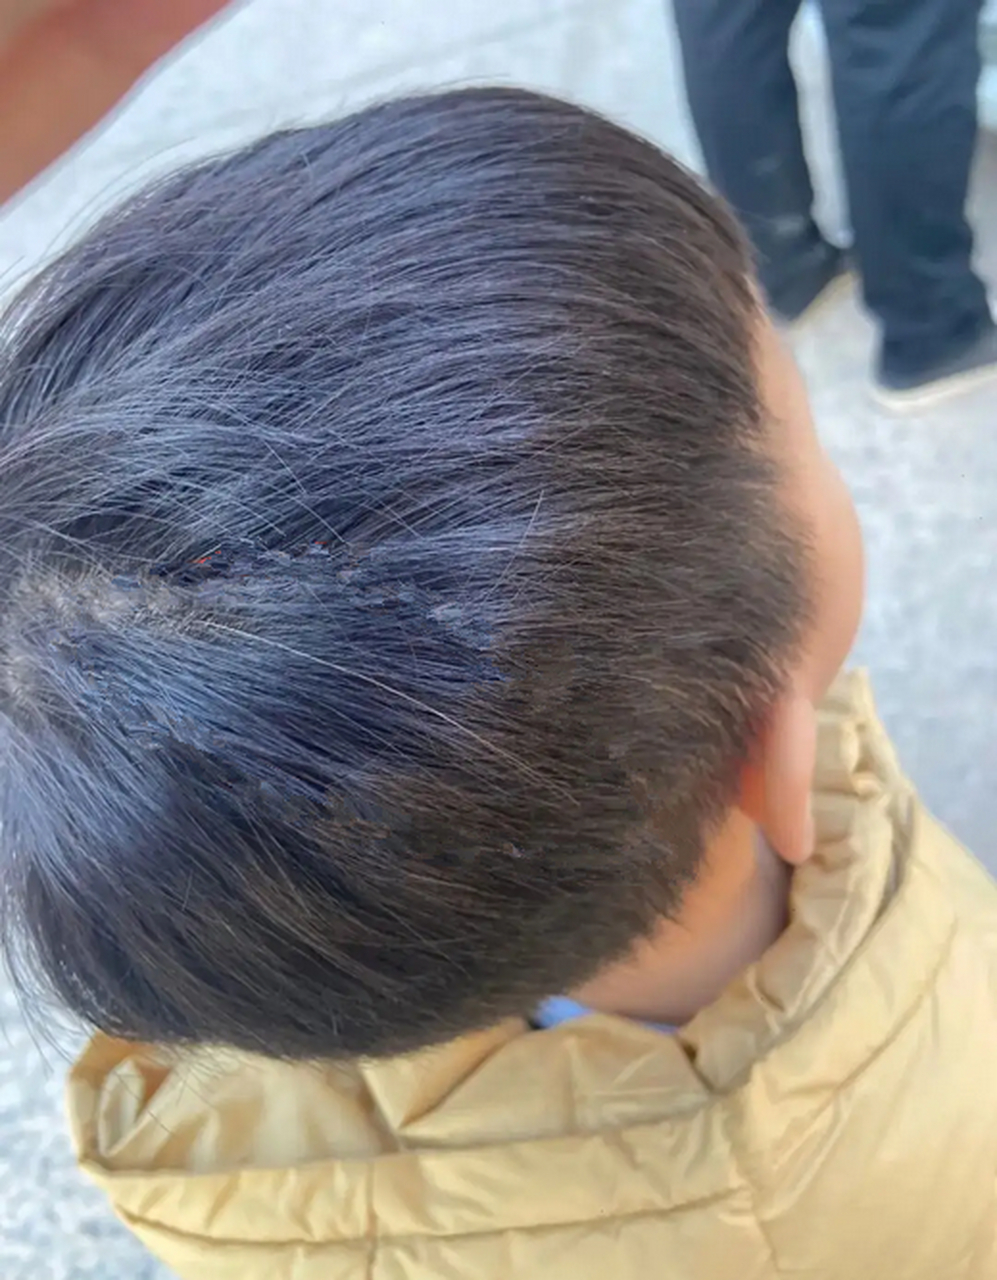 两岁的孩子有几根白发,怎么办?  宝宝出现白头发是正常的生理现象